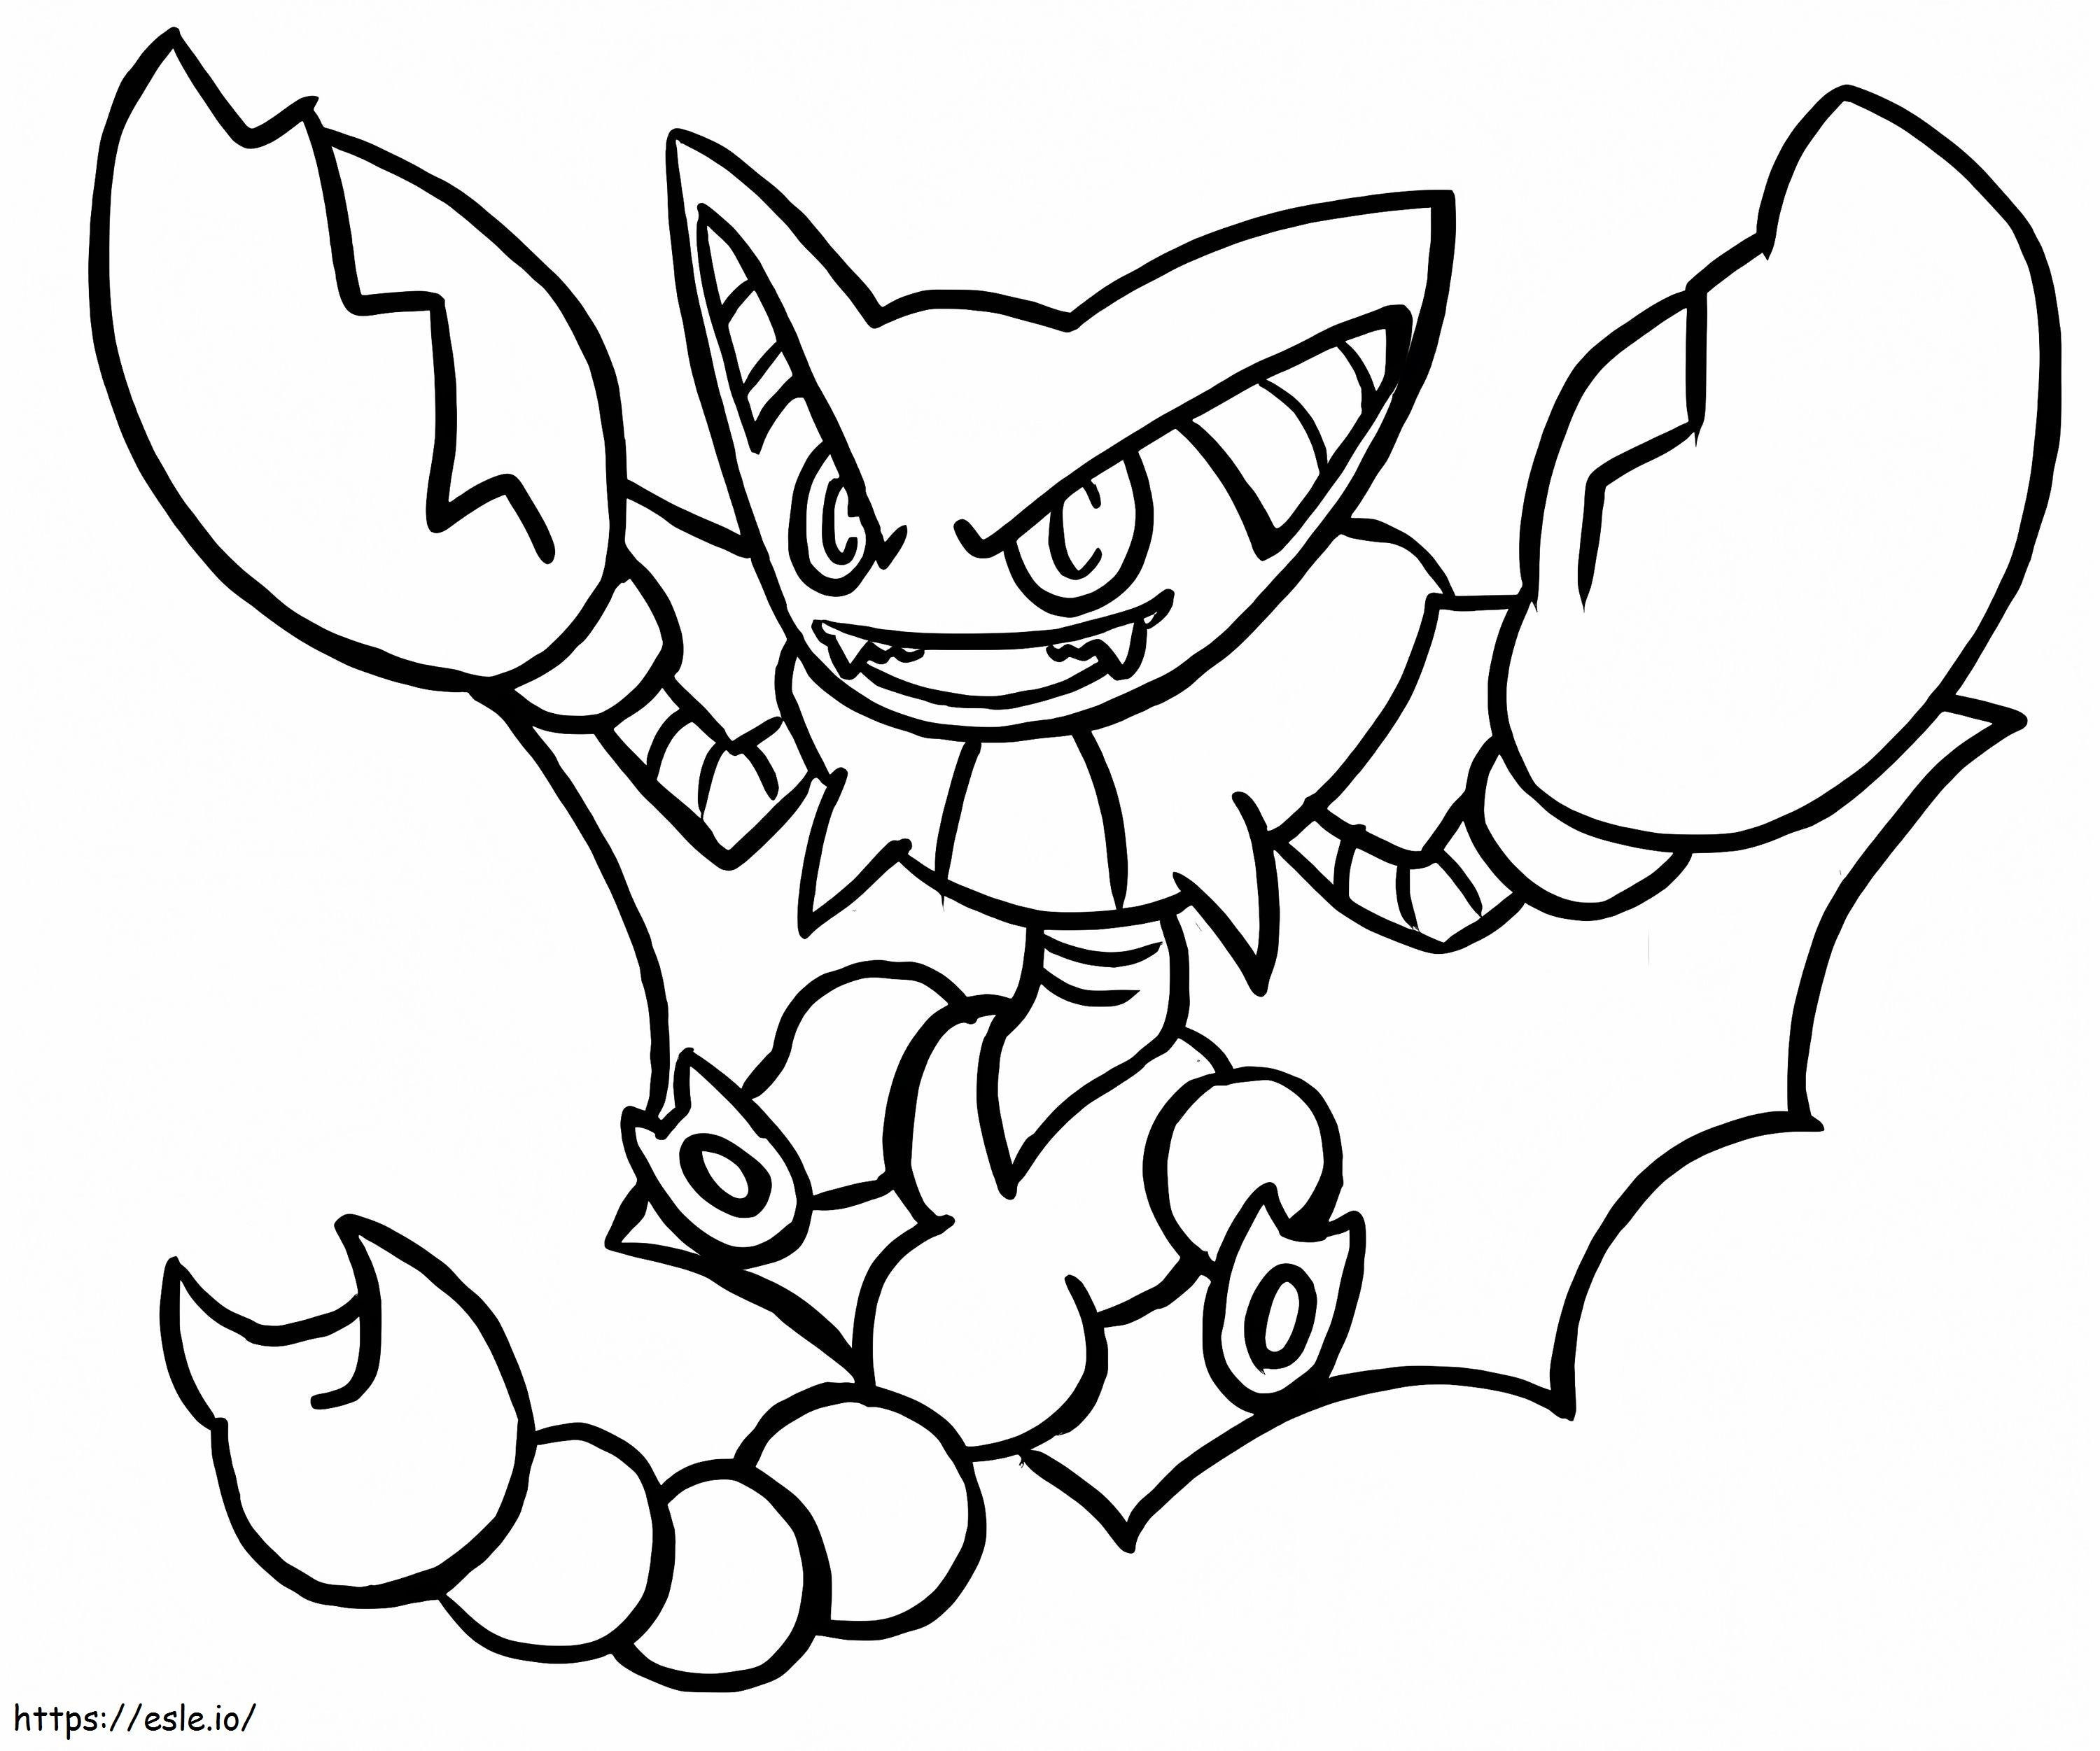 Pokemon Gliscor coloring page